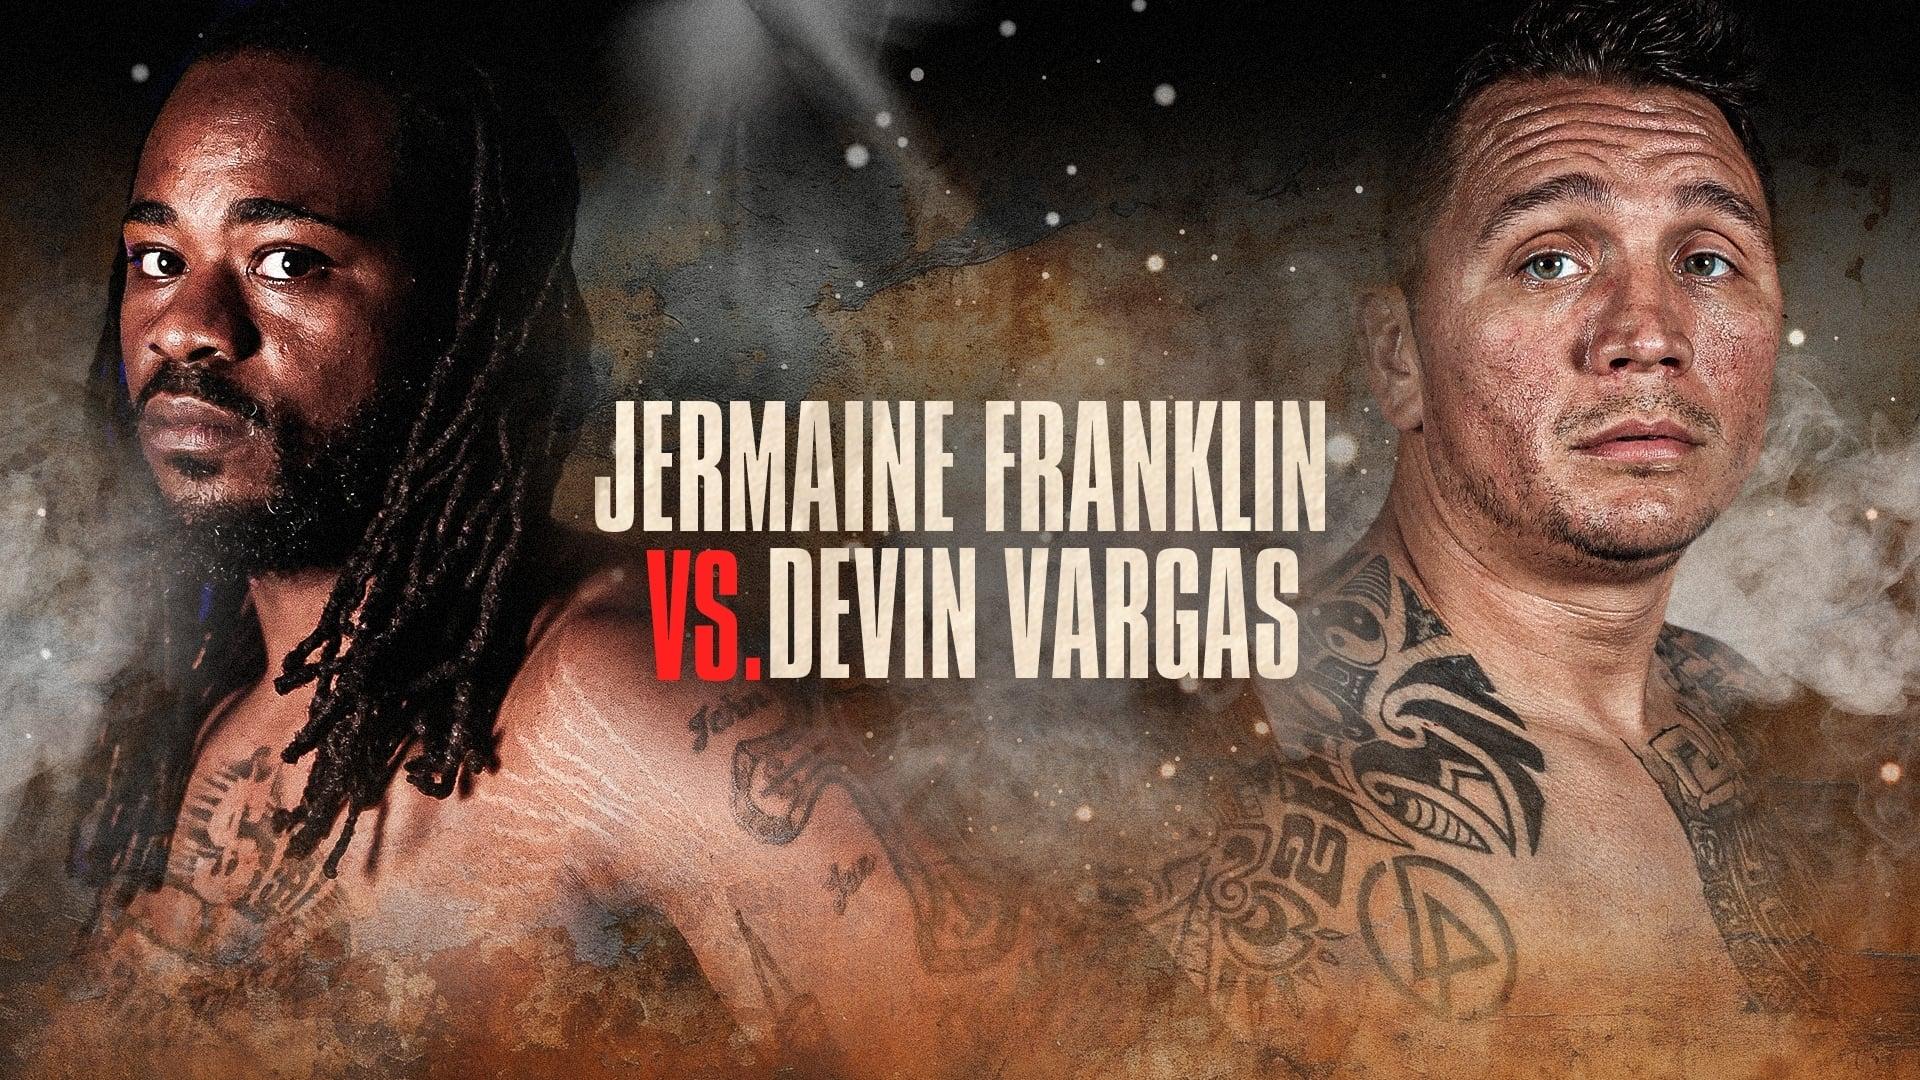 Jermaine Franklin vs. Devin Vargas backdrop